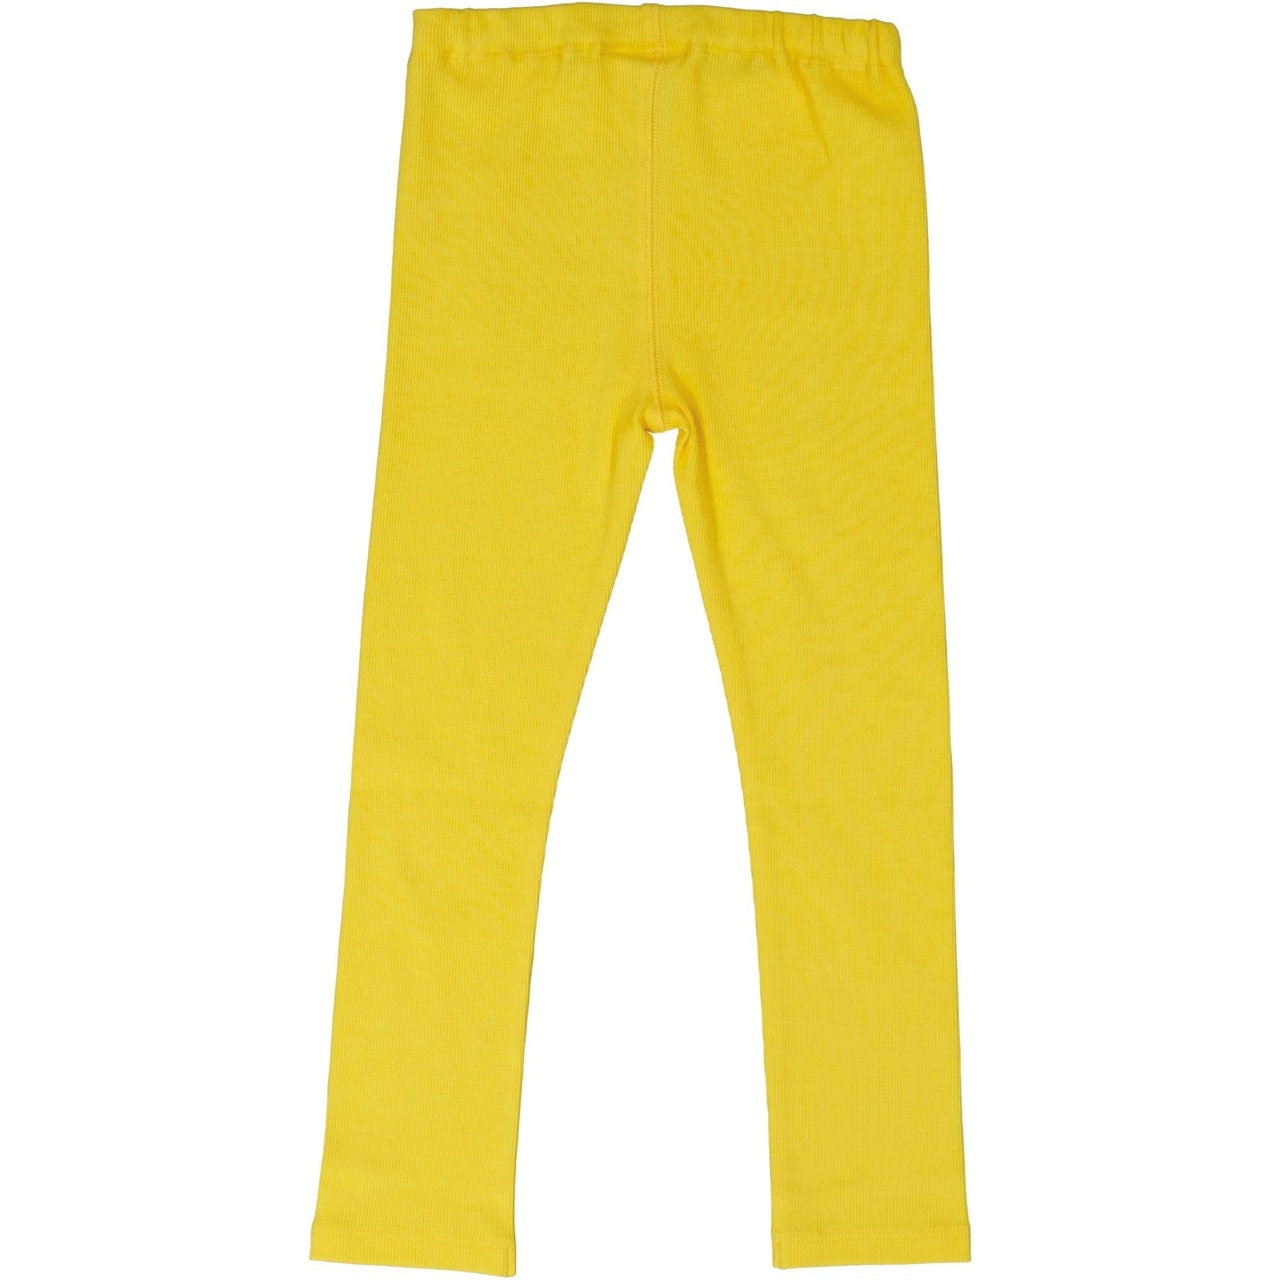 Leggings Yellow  62/68